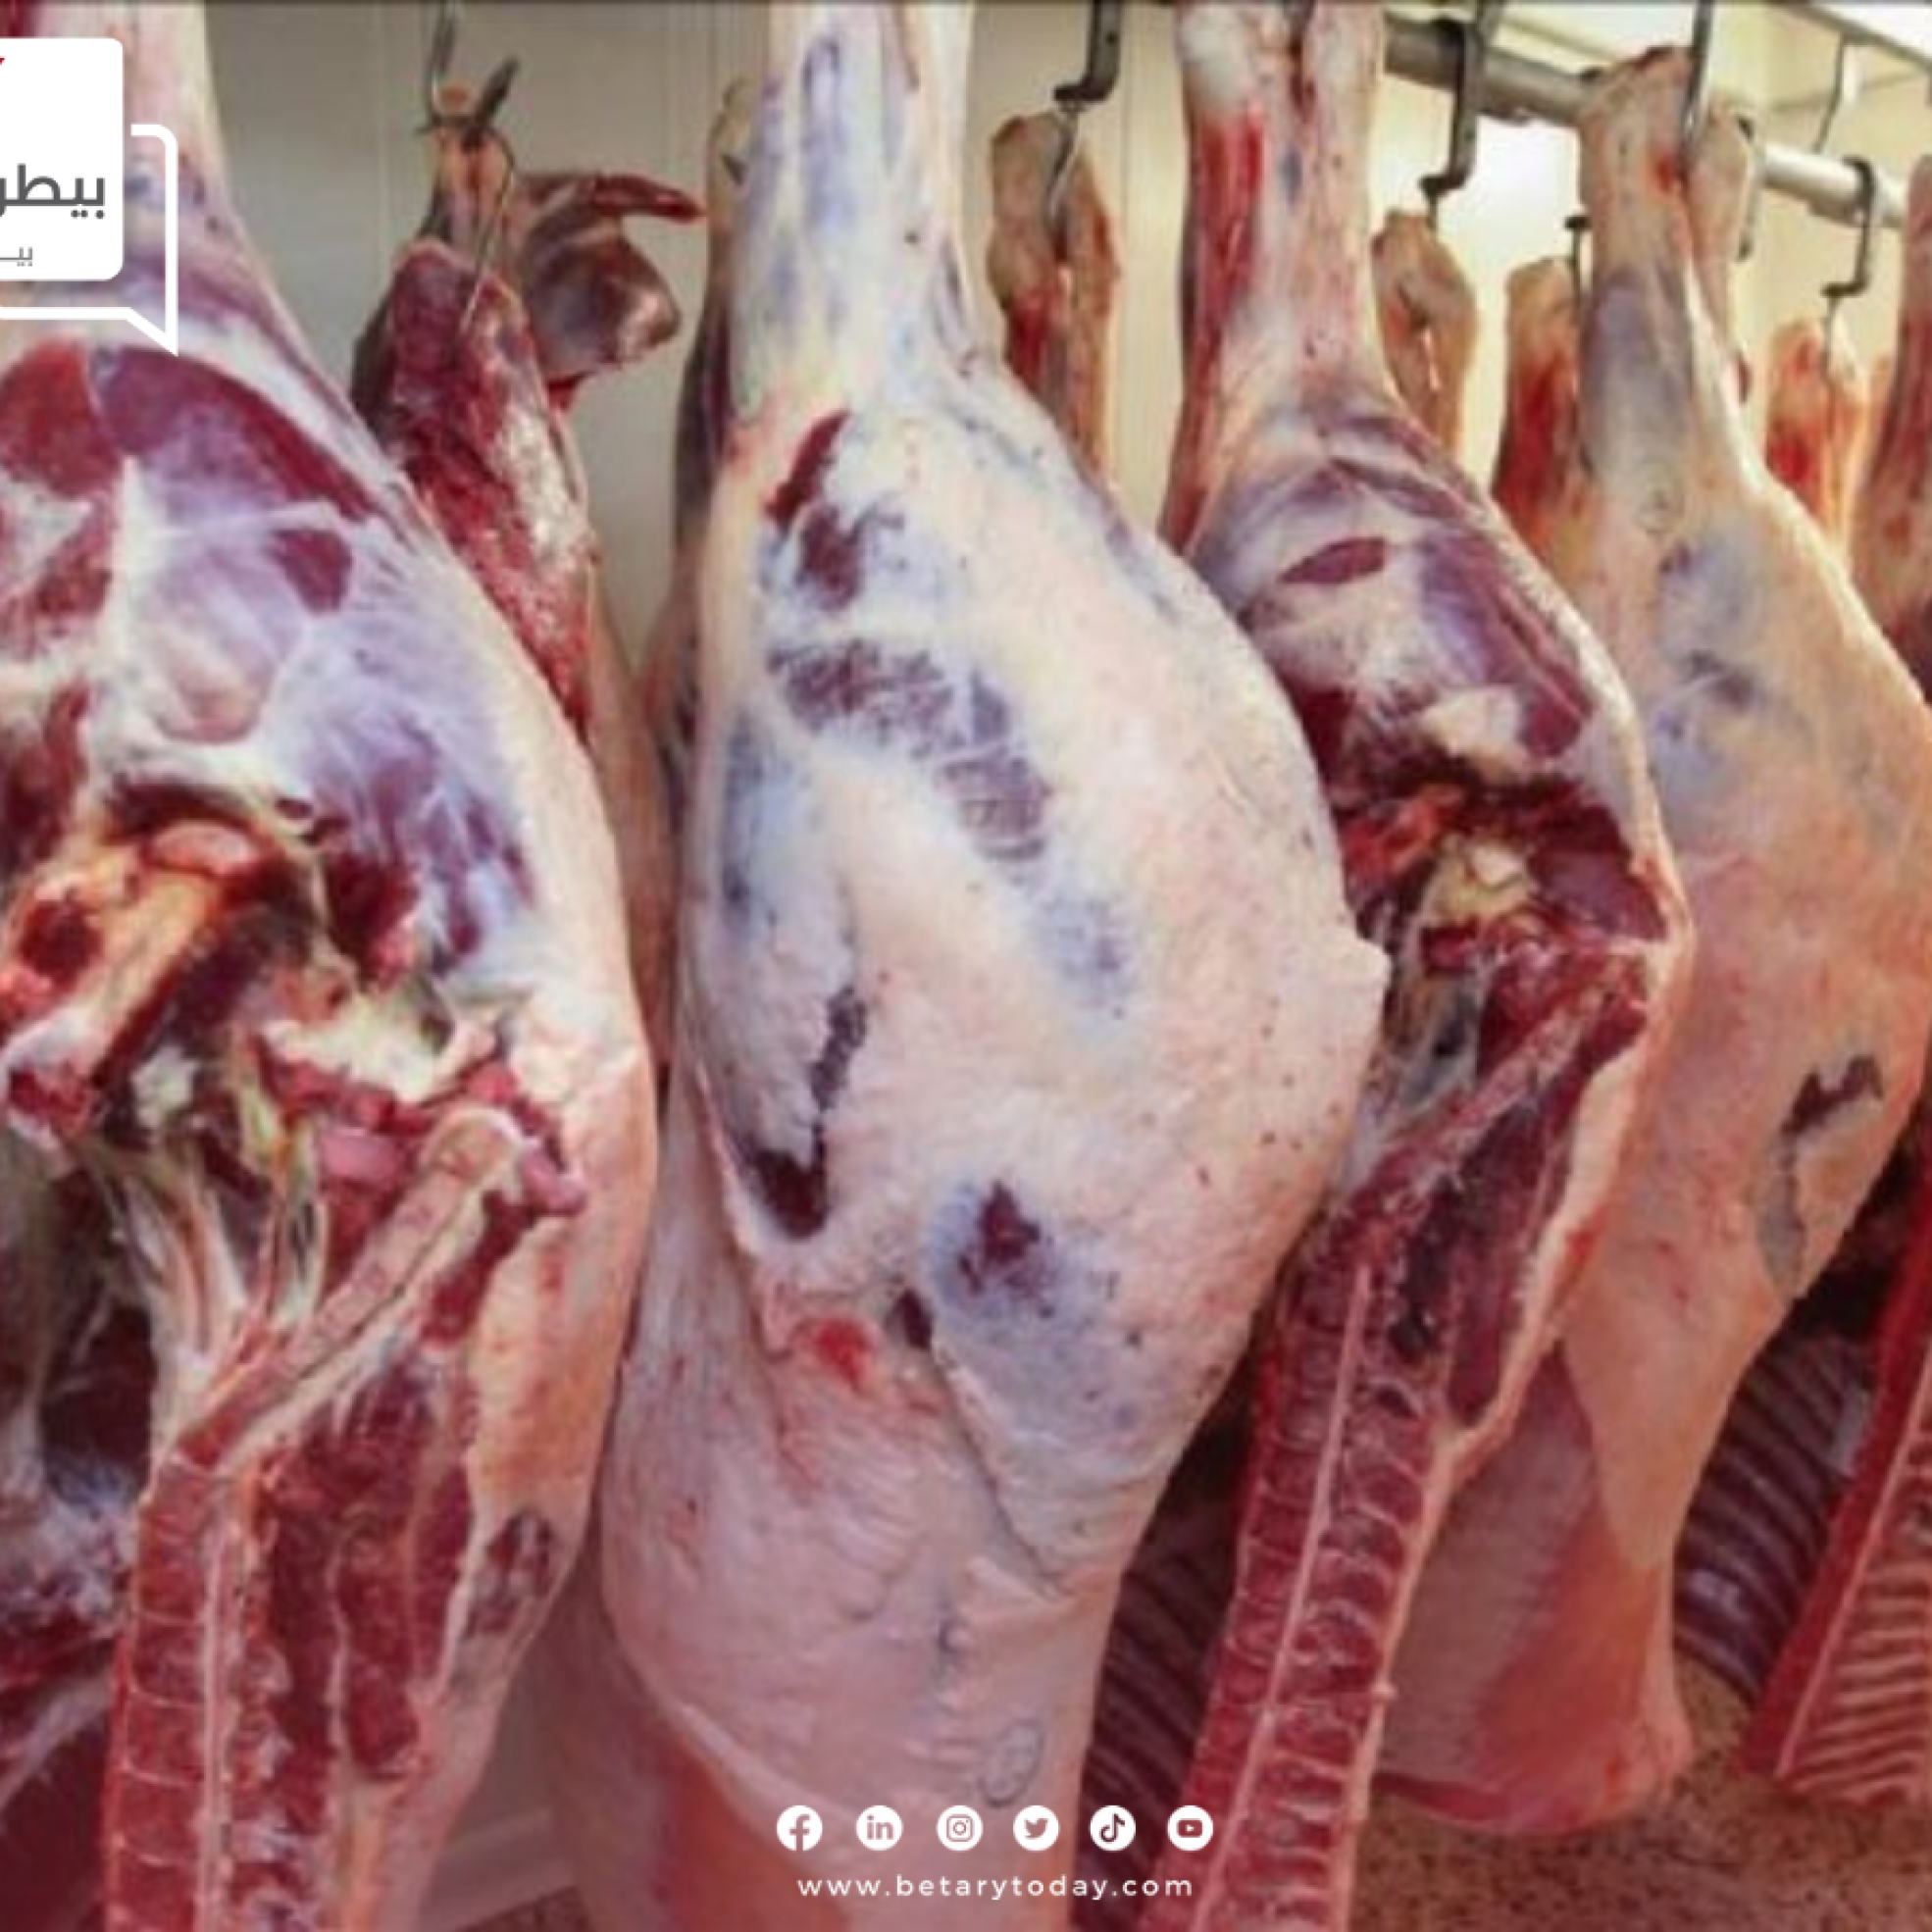 أسعار اللحوم الحمراء البلدي والمستوردة اليوم الاثنين